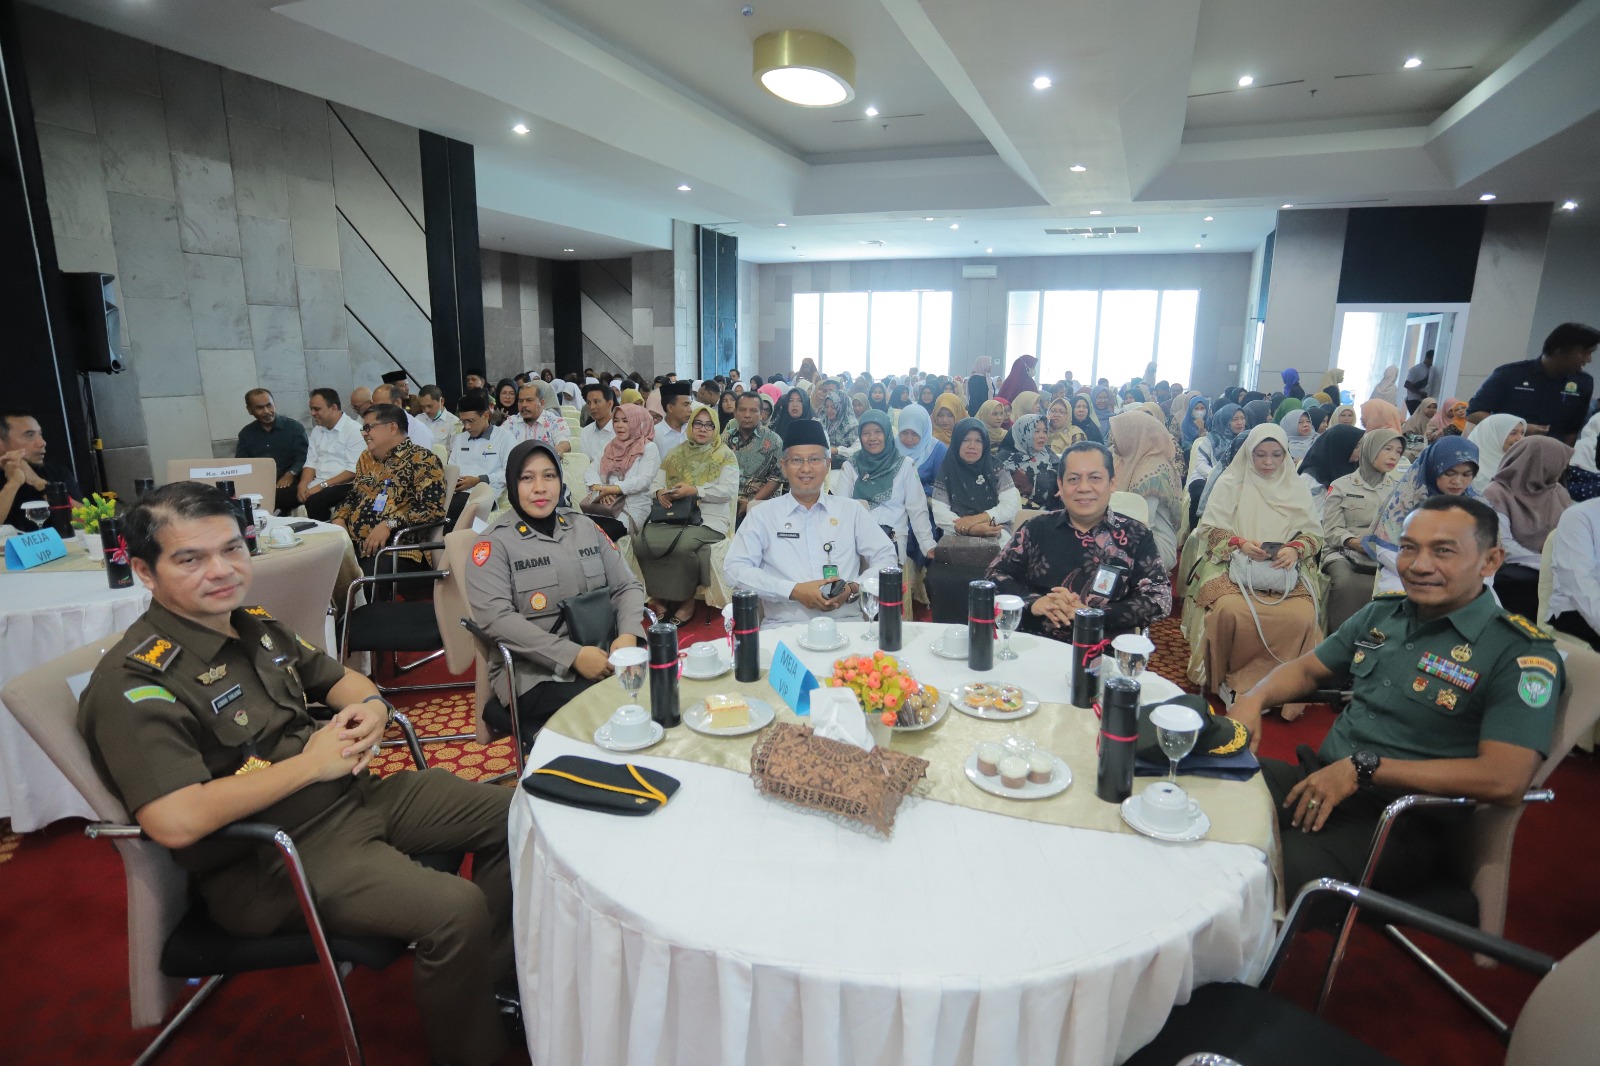 ANRI dan DPKA Kolaborasi Penobatan Duta Arsip Aceh Tahun 2023